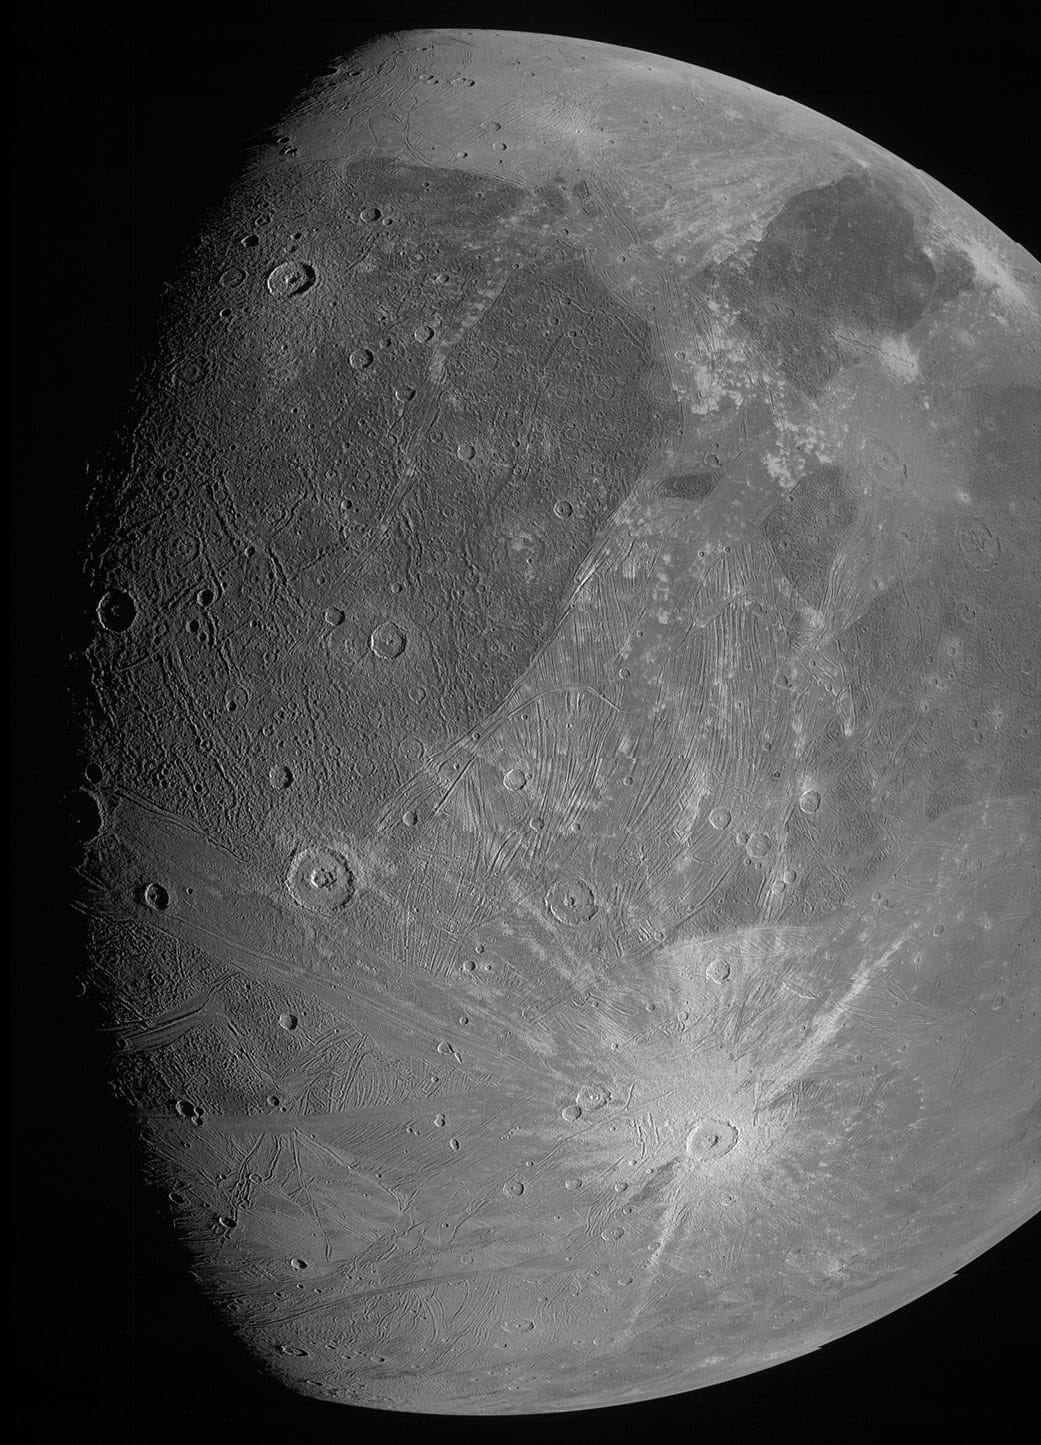 Bolygós rövidhírek: megérkeztek az első friss képek a Ganymedesről